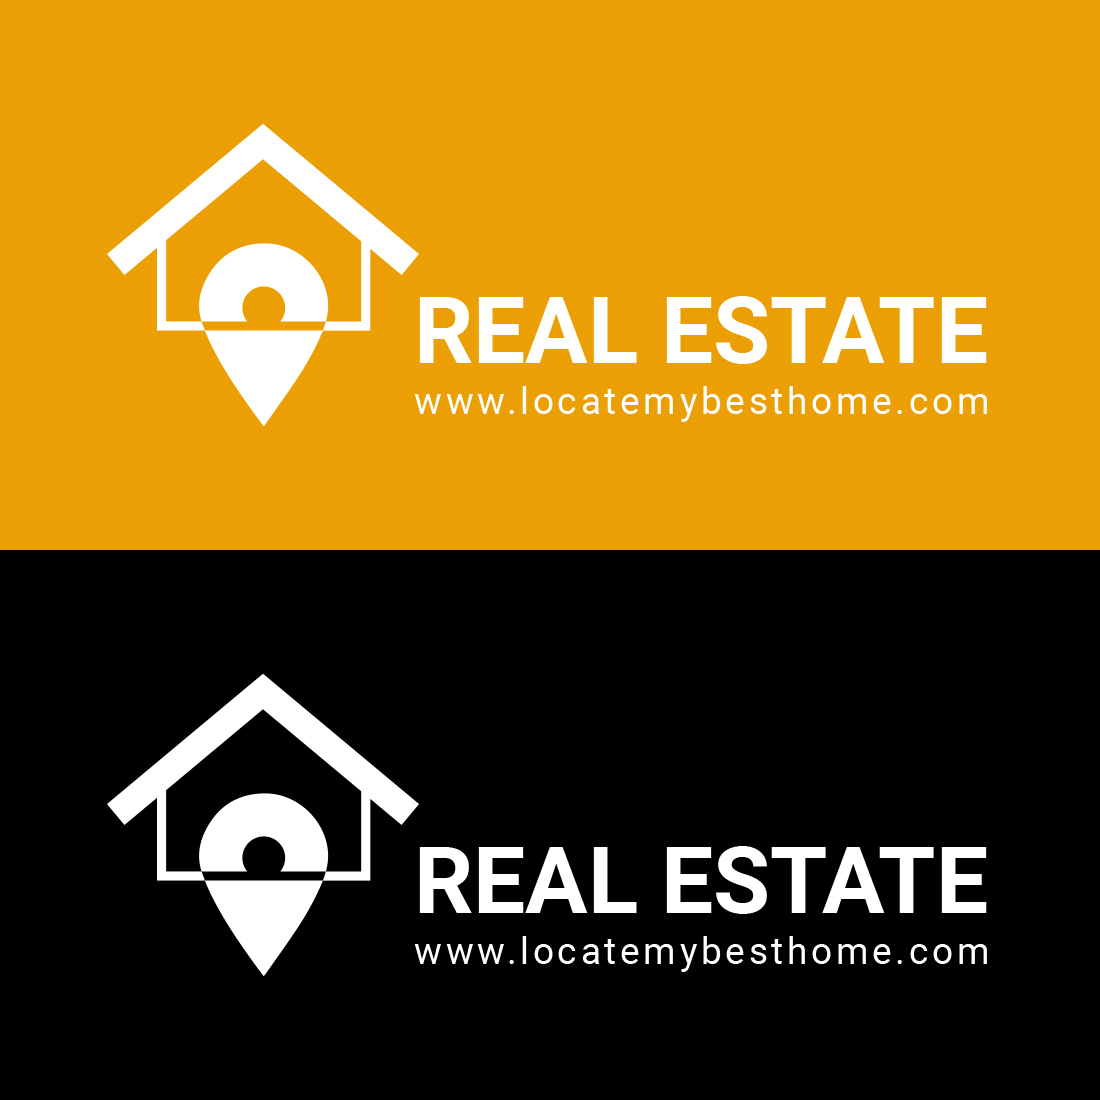 Modern Real Estate Logo Design presentation.